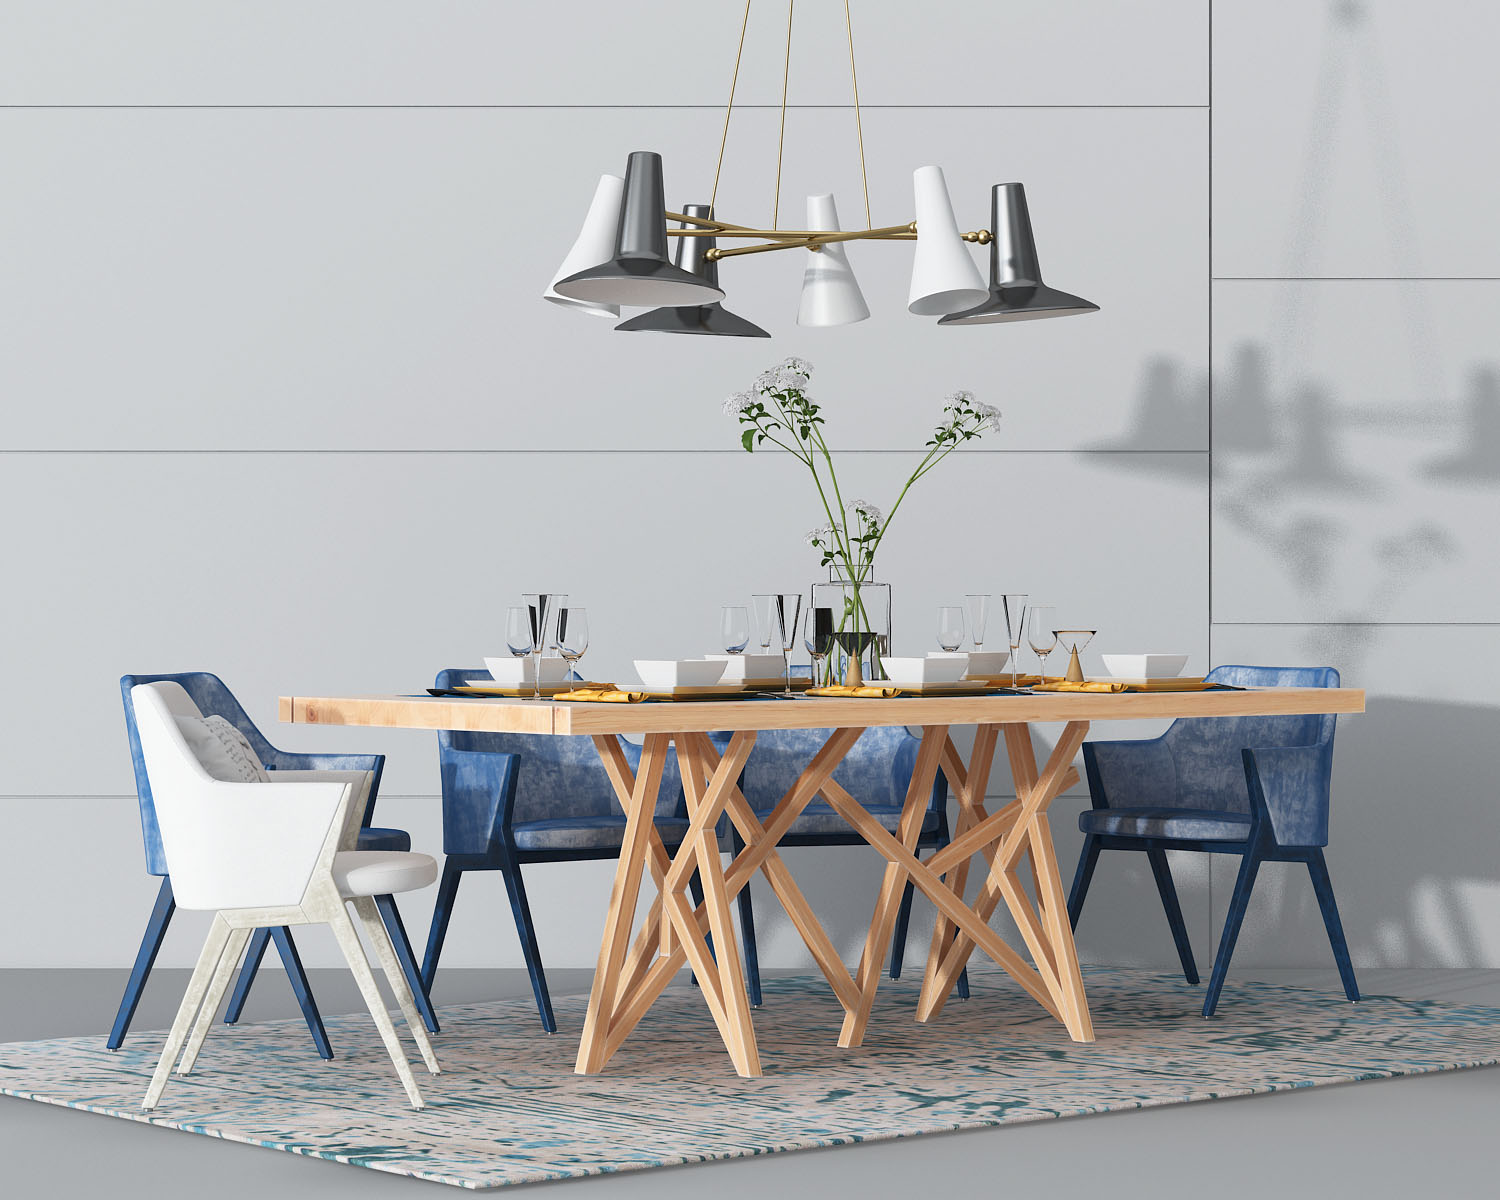 桌椅组合, 餐桌椅, 吊灯, 餐具, 北欧